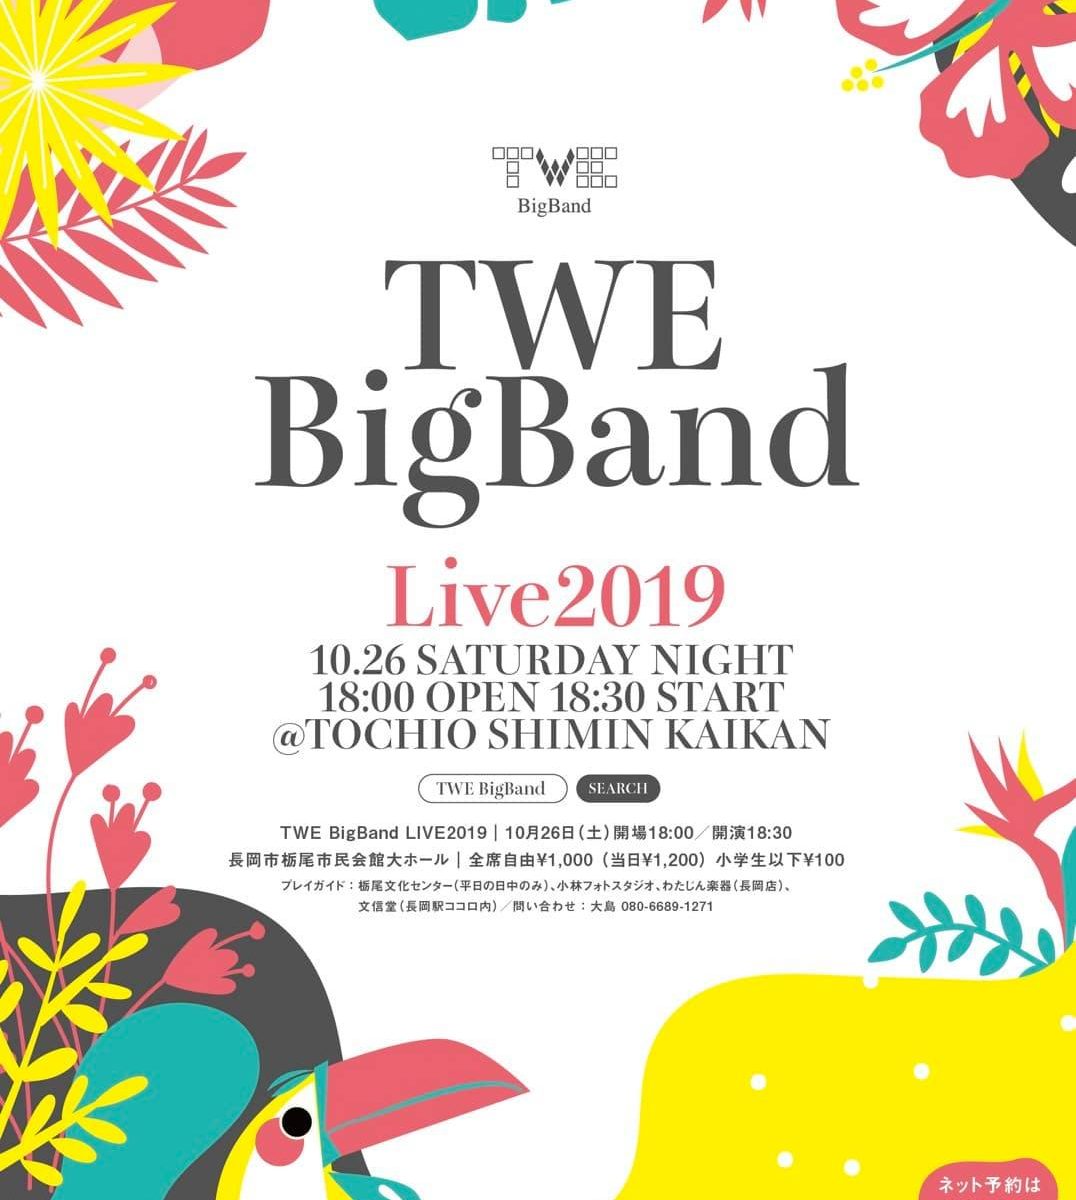 TWE BigBand Live 2019